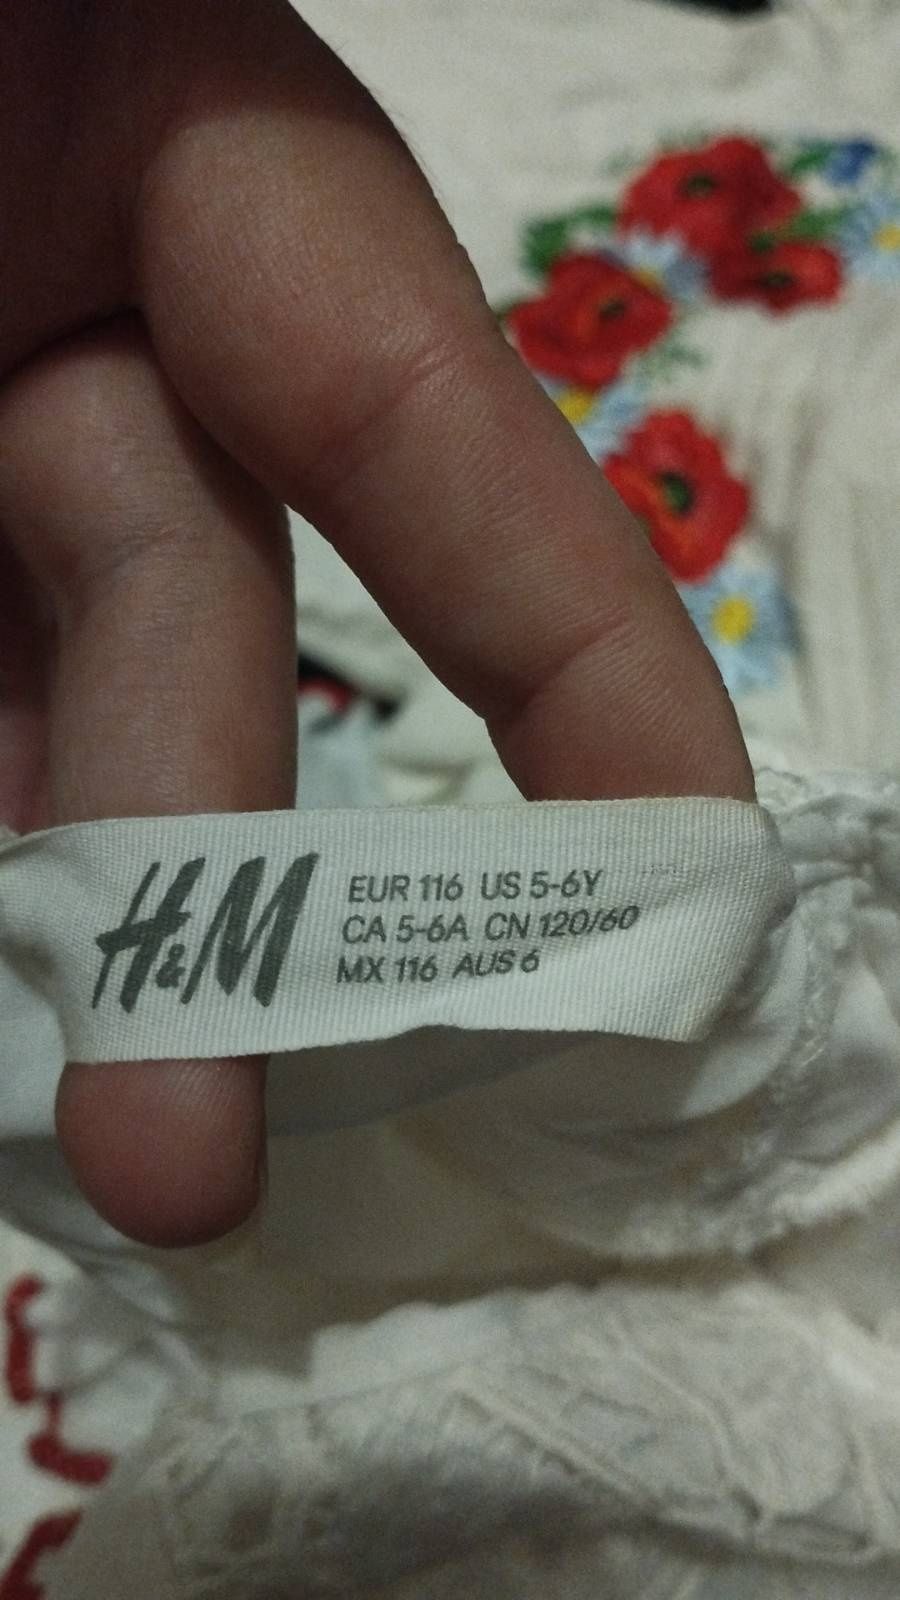 Фірмове плаття H&M для дівчигки на зріст 116 см.
Без дефектів, але вид